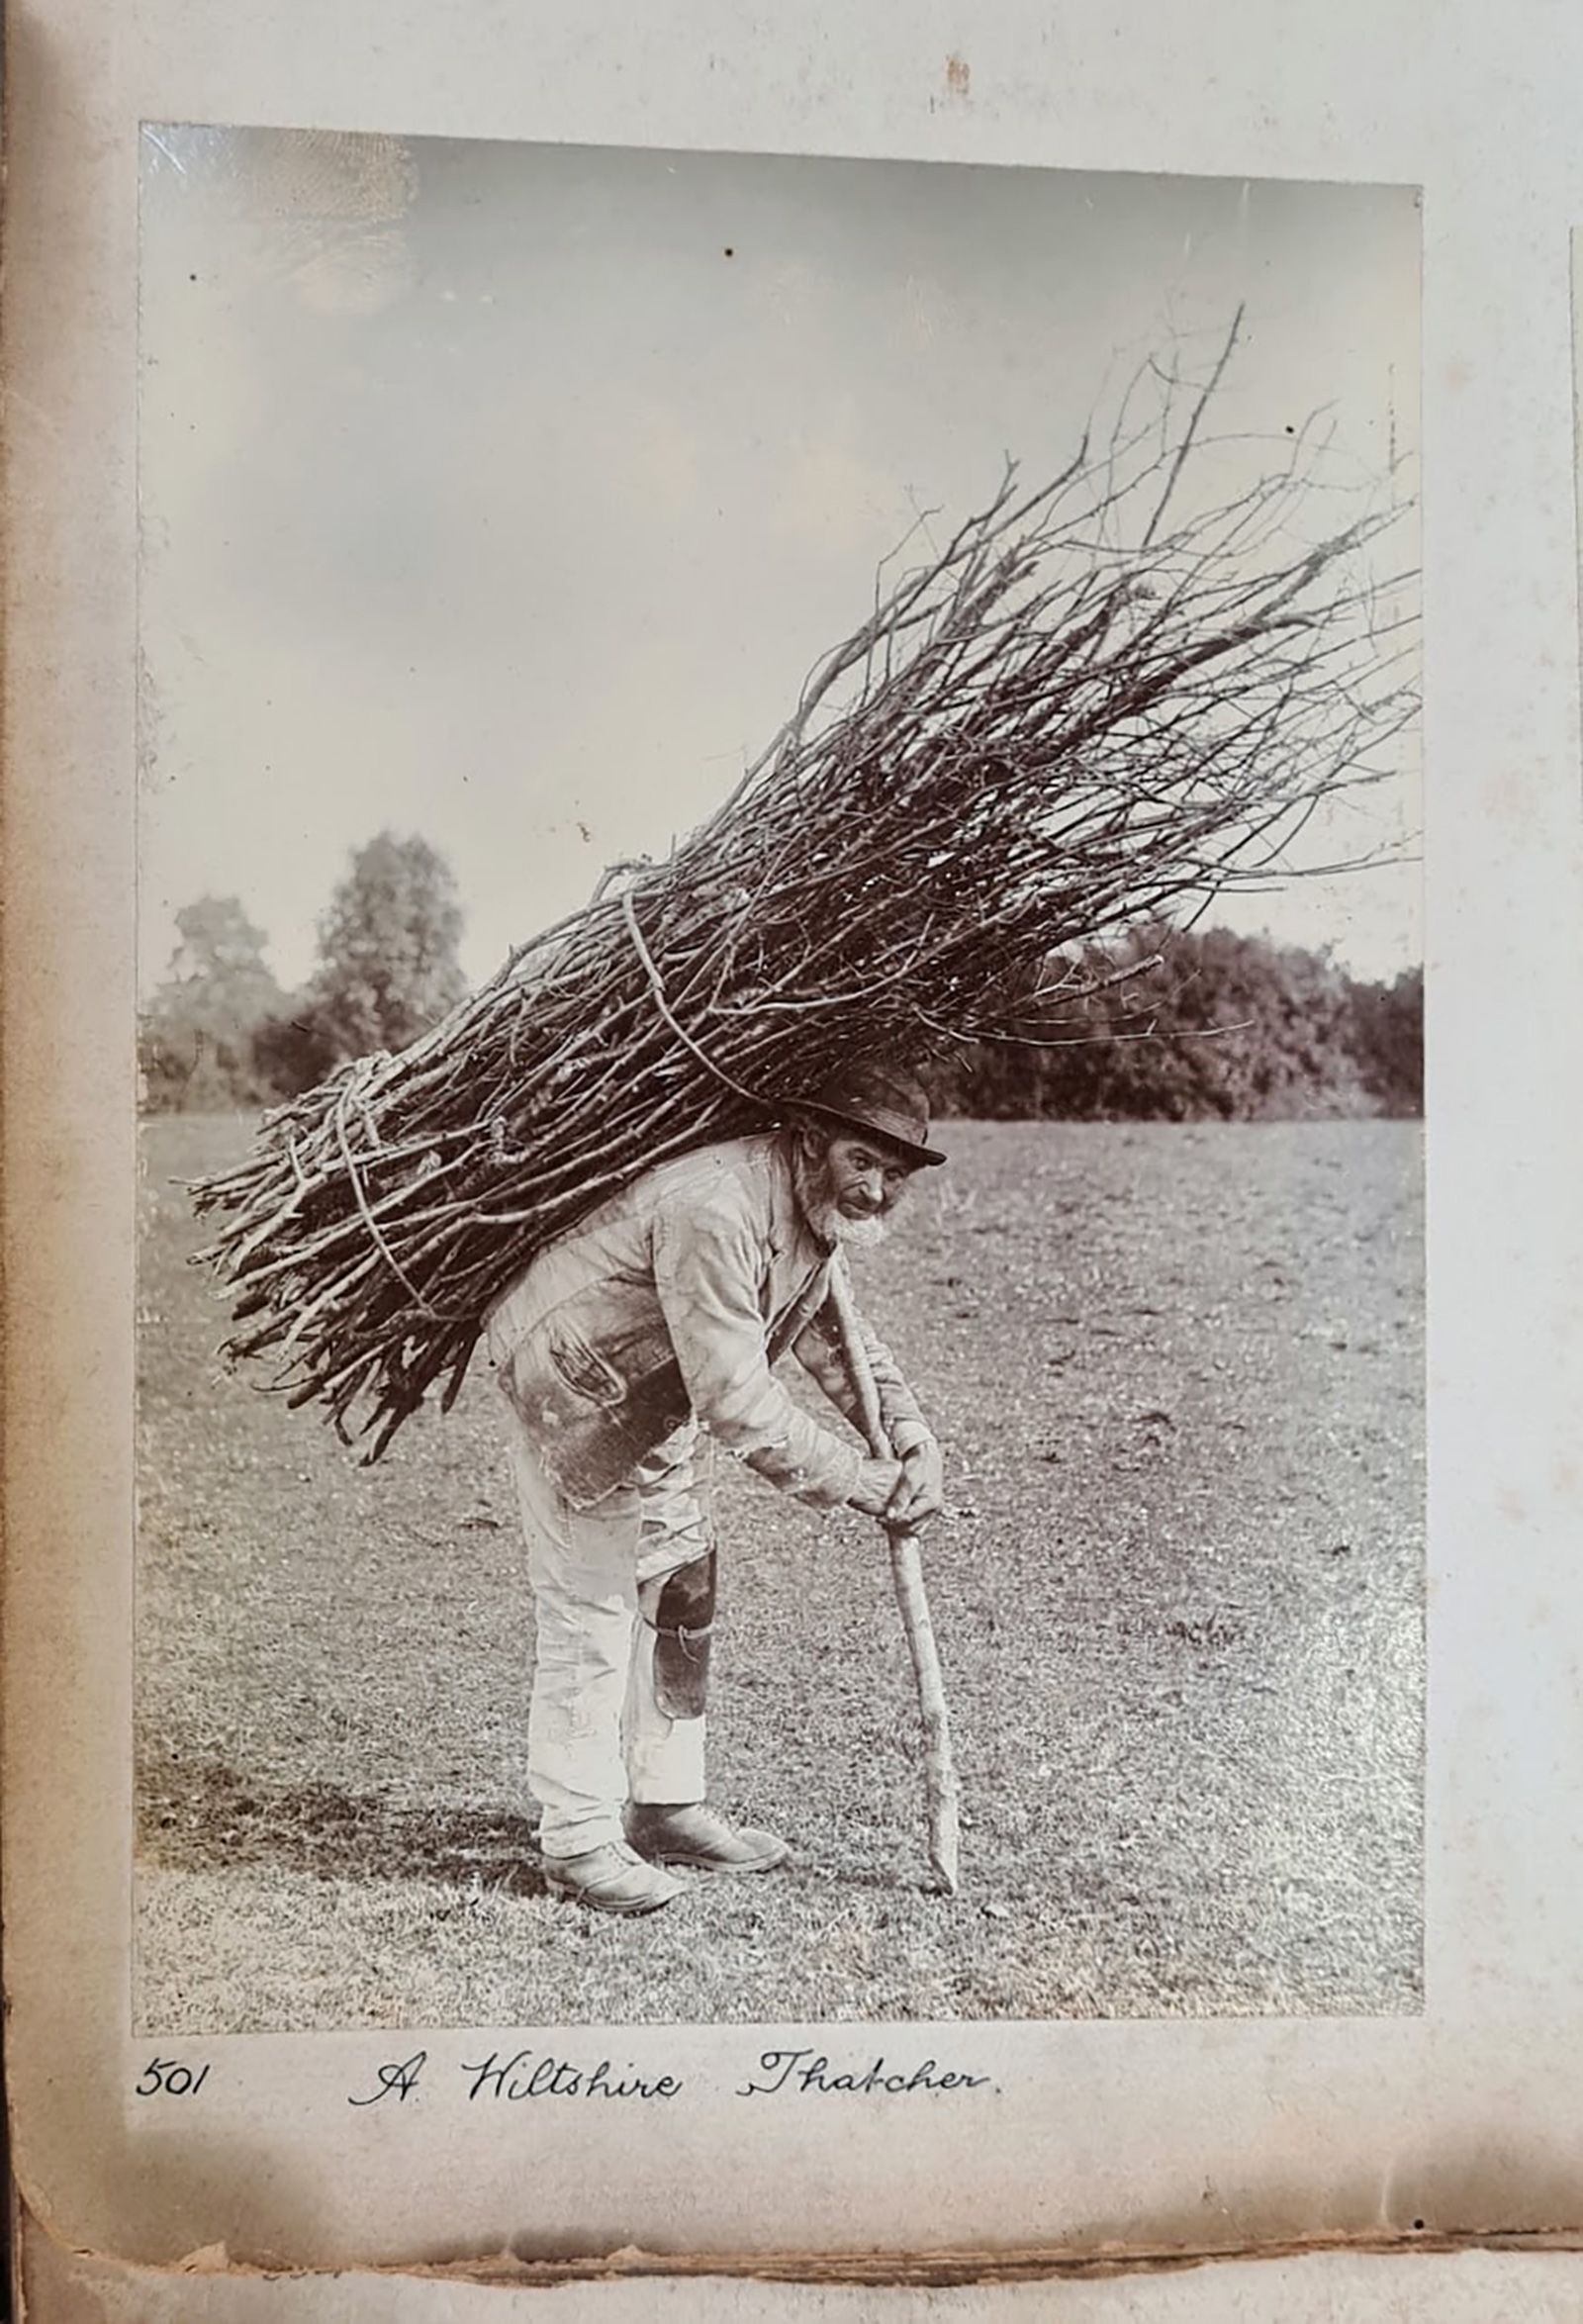 「まきを背負った老人」の原本とみられるモノクロ写真/Courtesy Wiltshire Museum